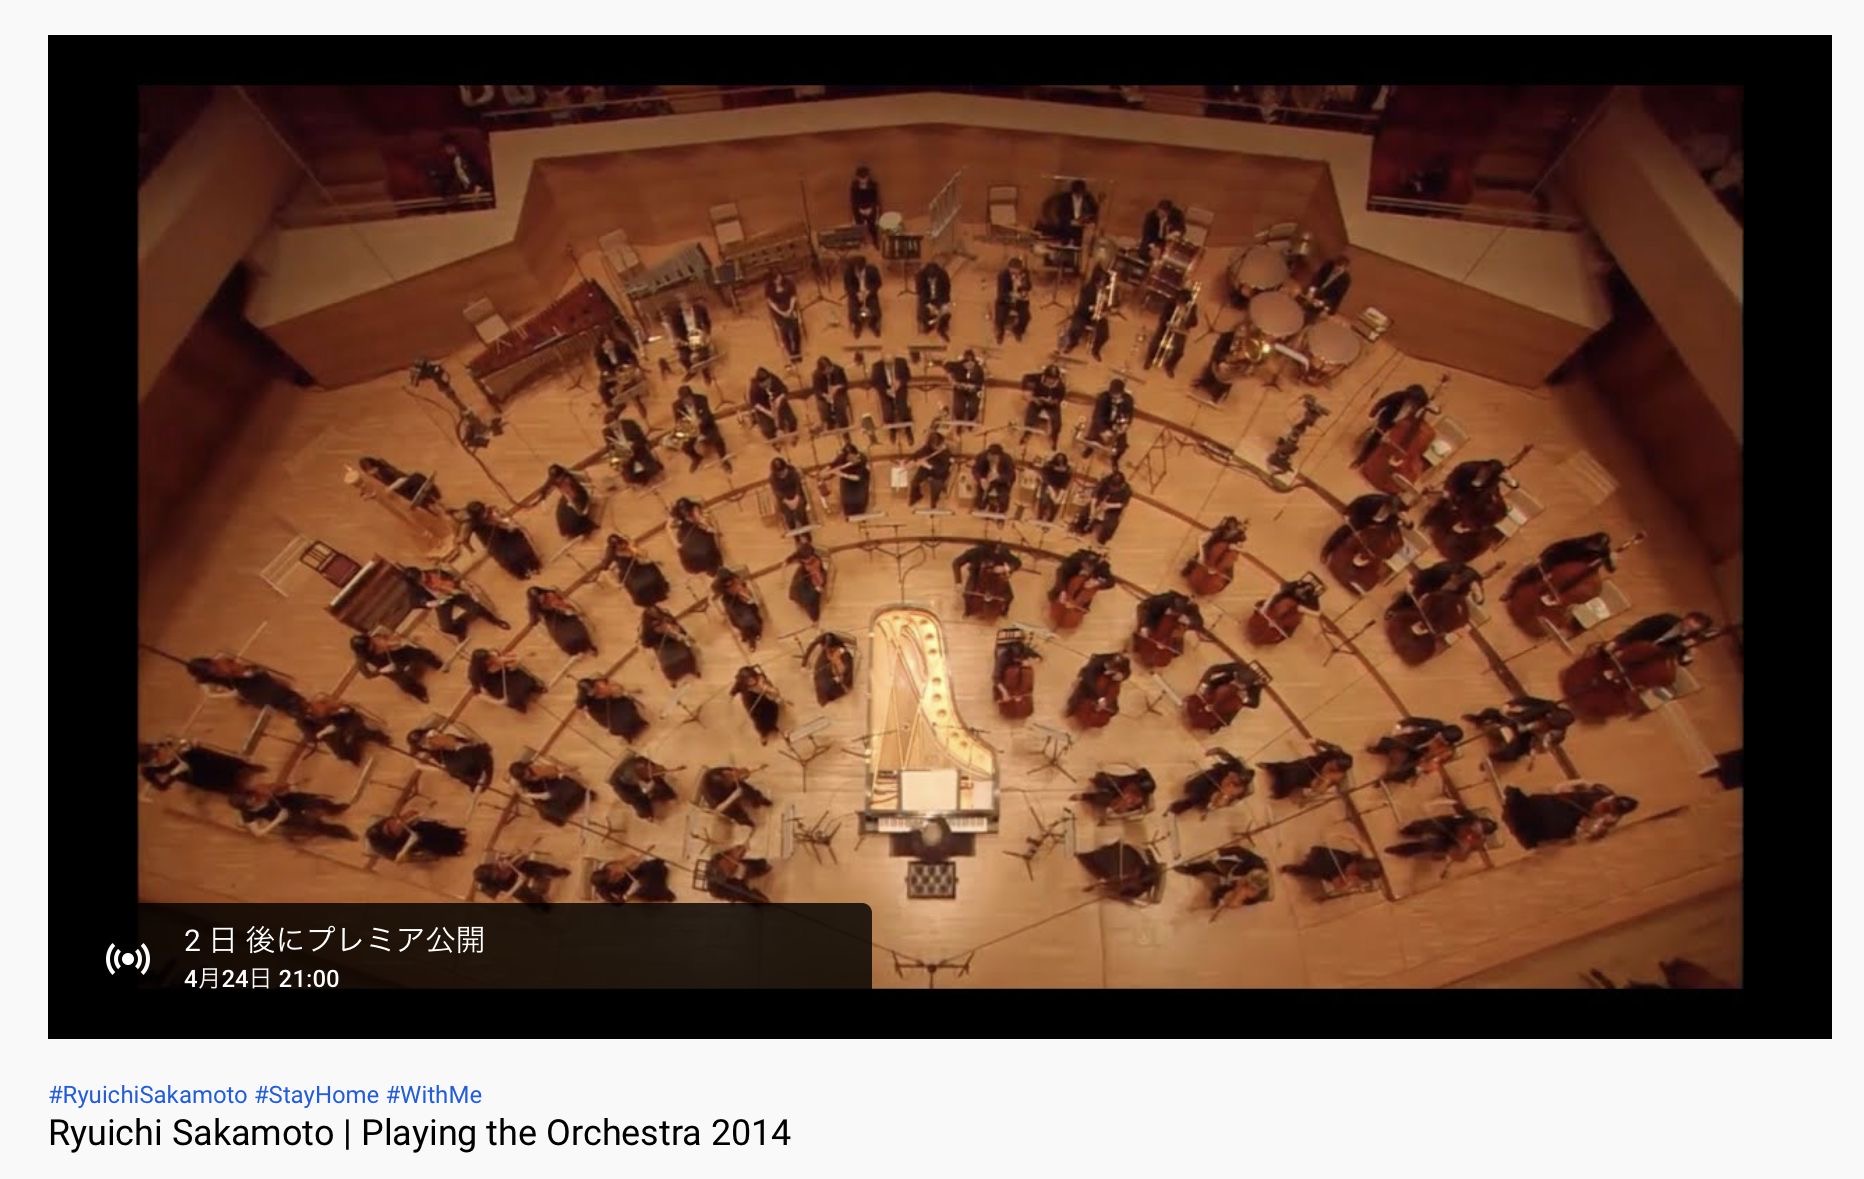 坂本龍一のピアノと、東京フィルハーモニー交響楽団が共演したライブ映像を配信！